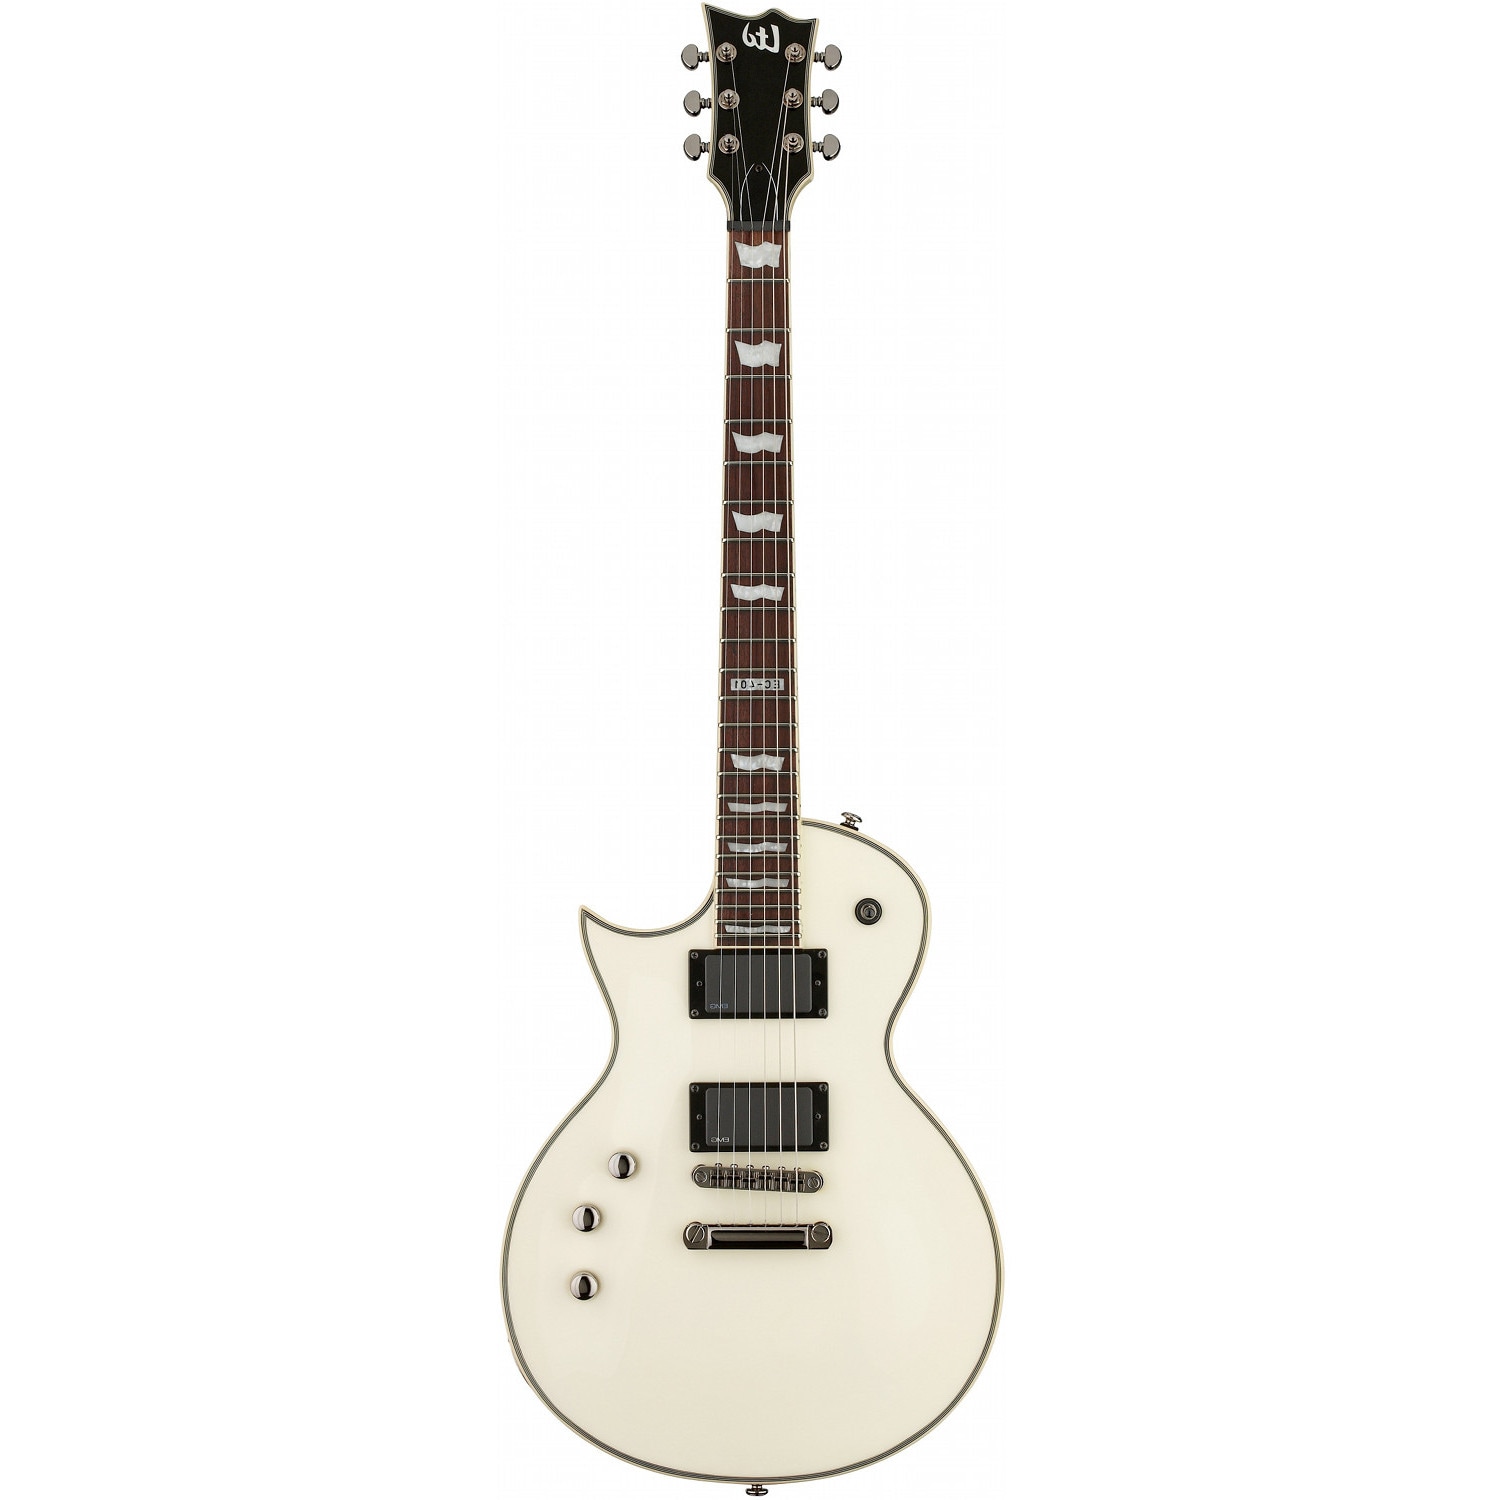 EC-401 OW LH linkshandige gitaar Olympic White